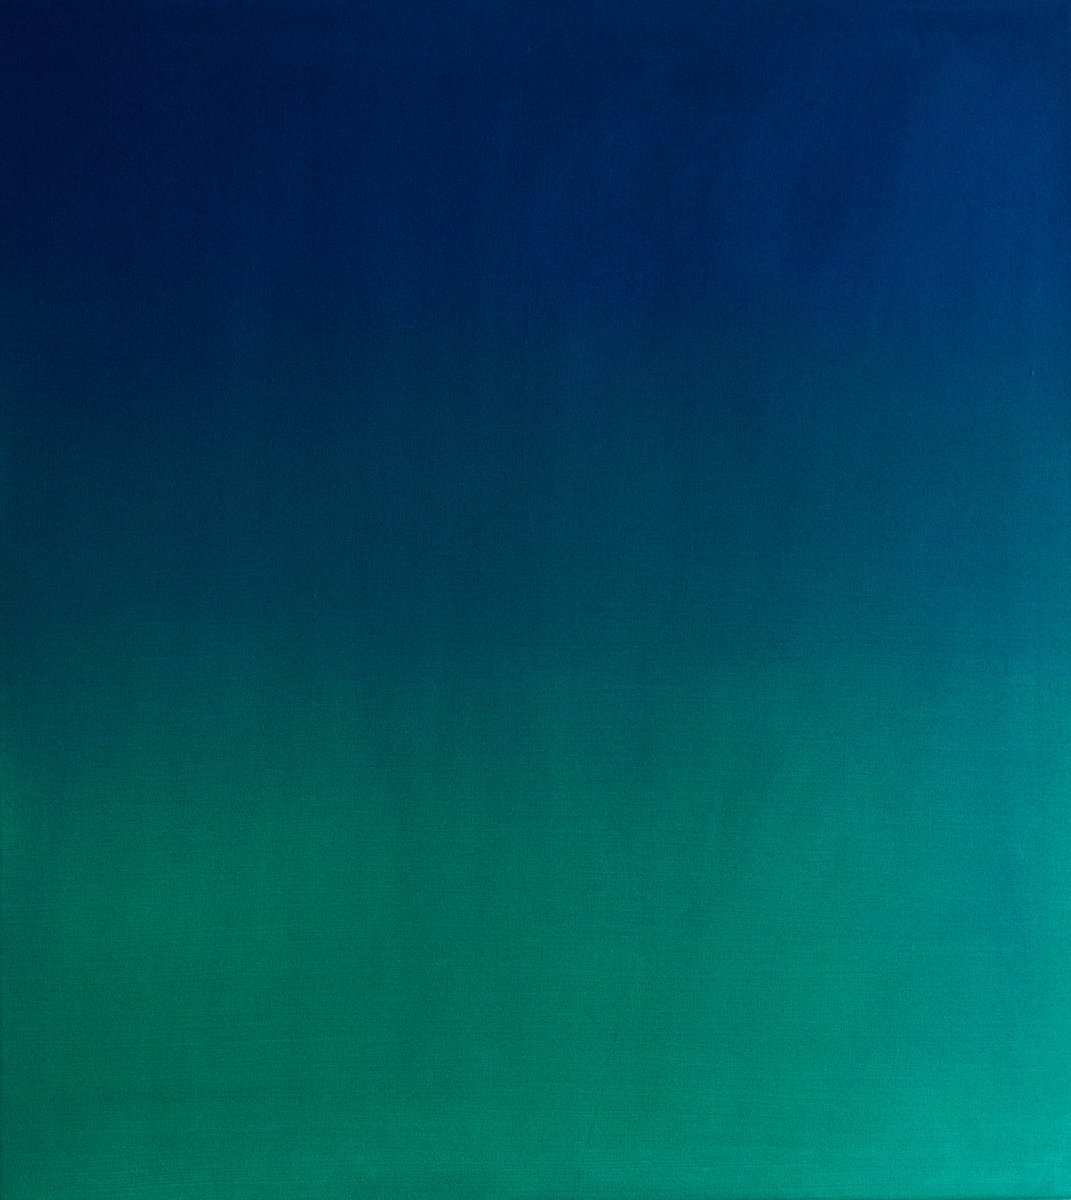 Green & Blue by Petr Johan Marek